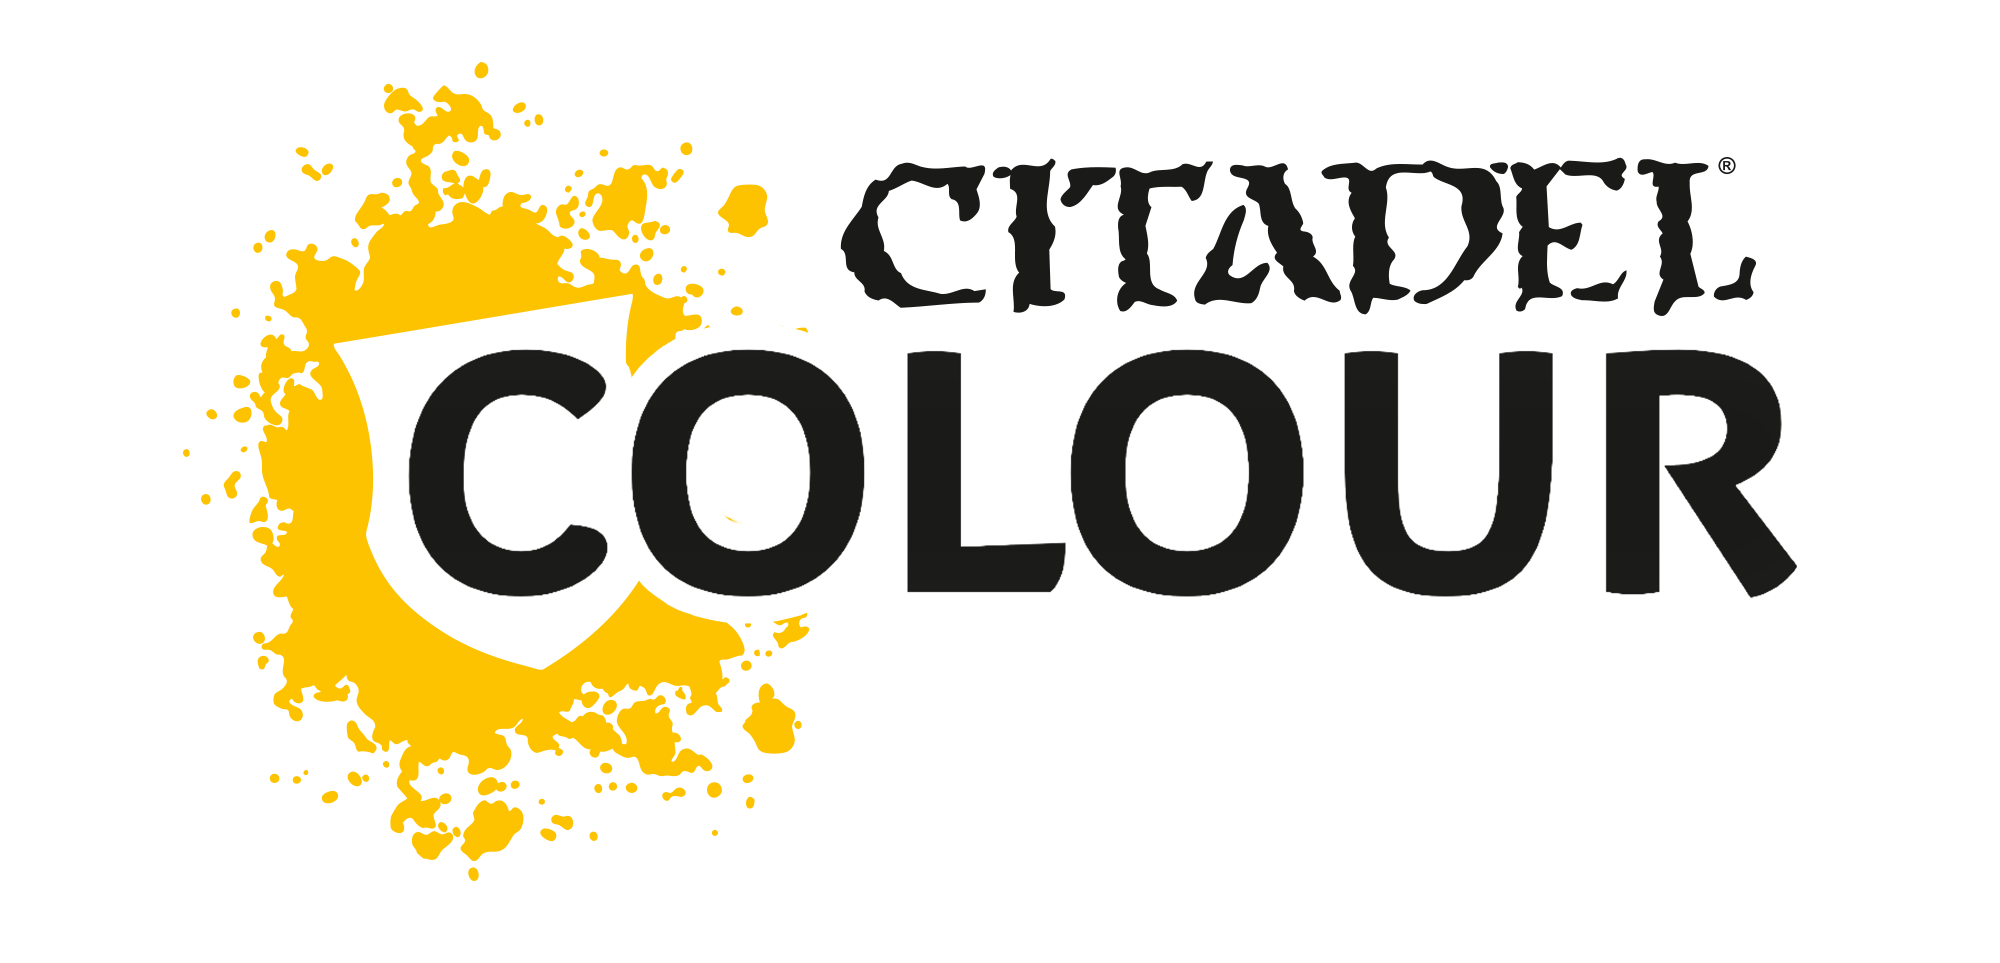 Citadel Farben